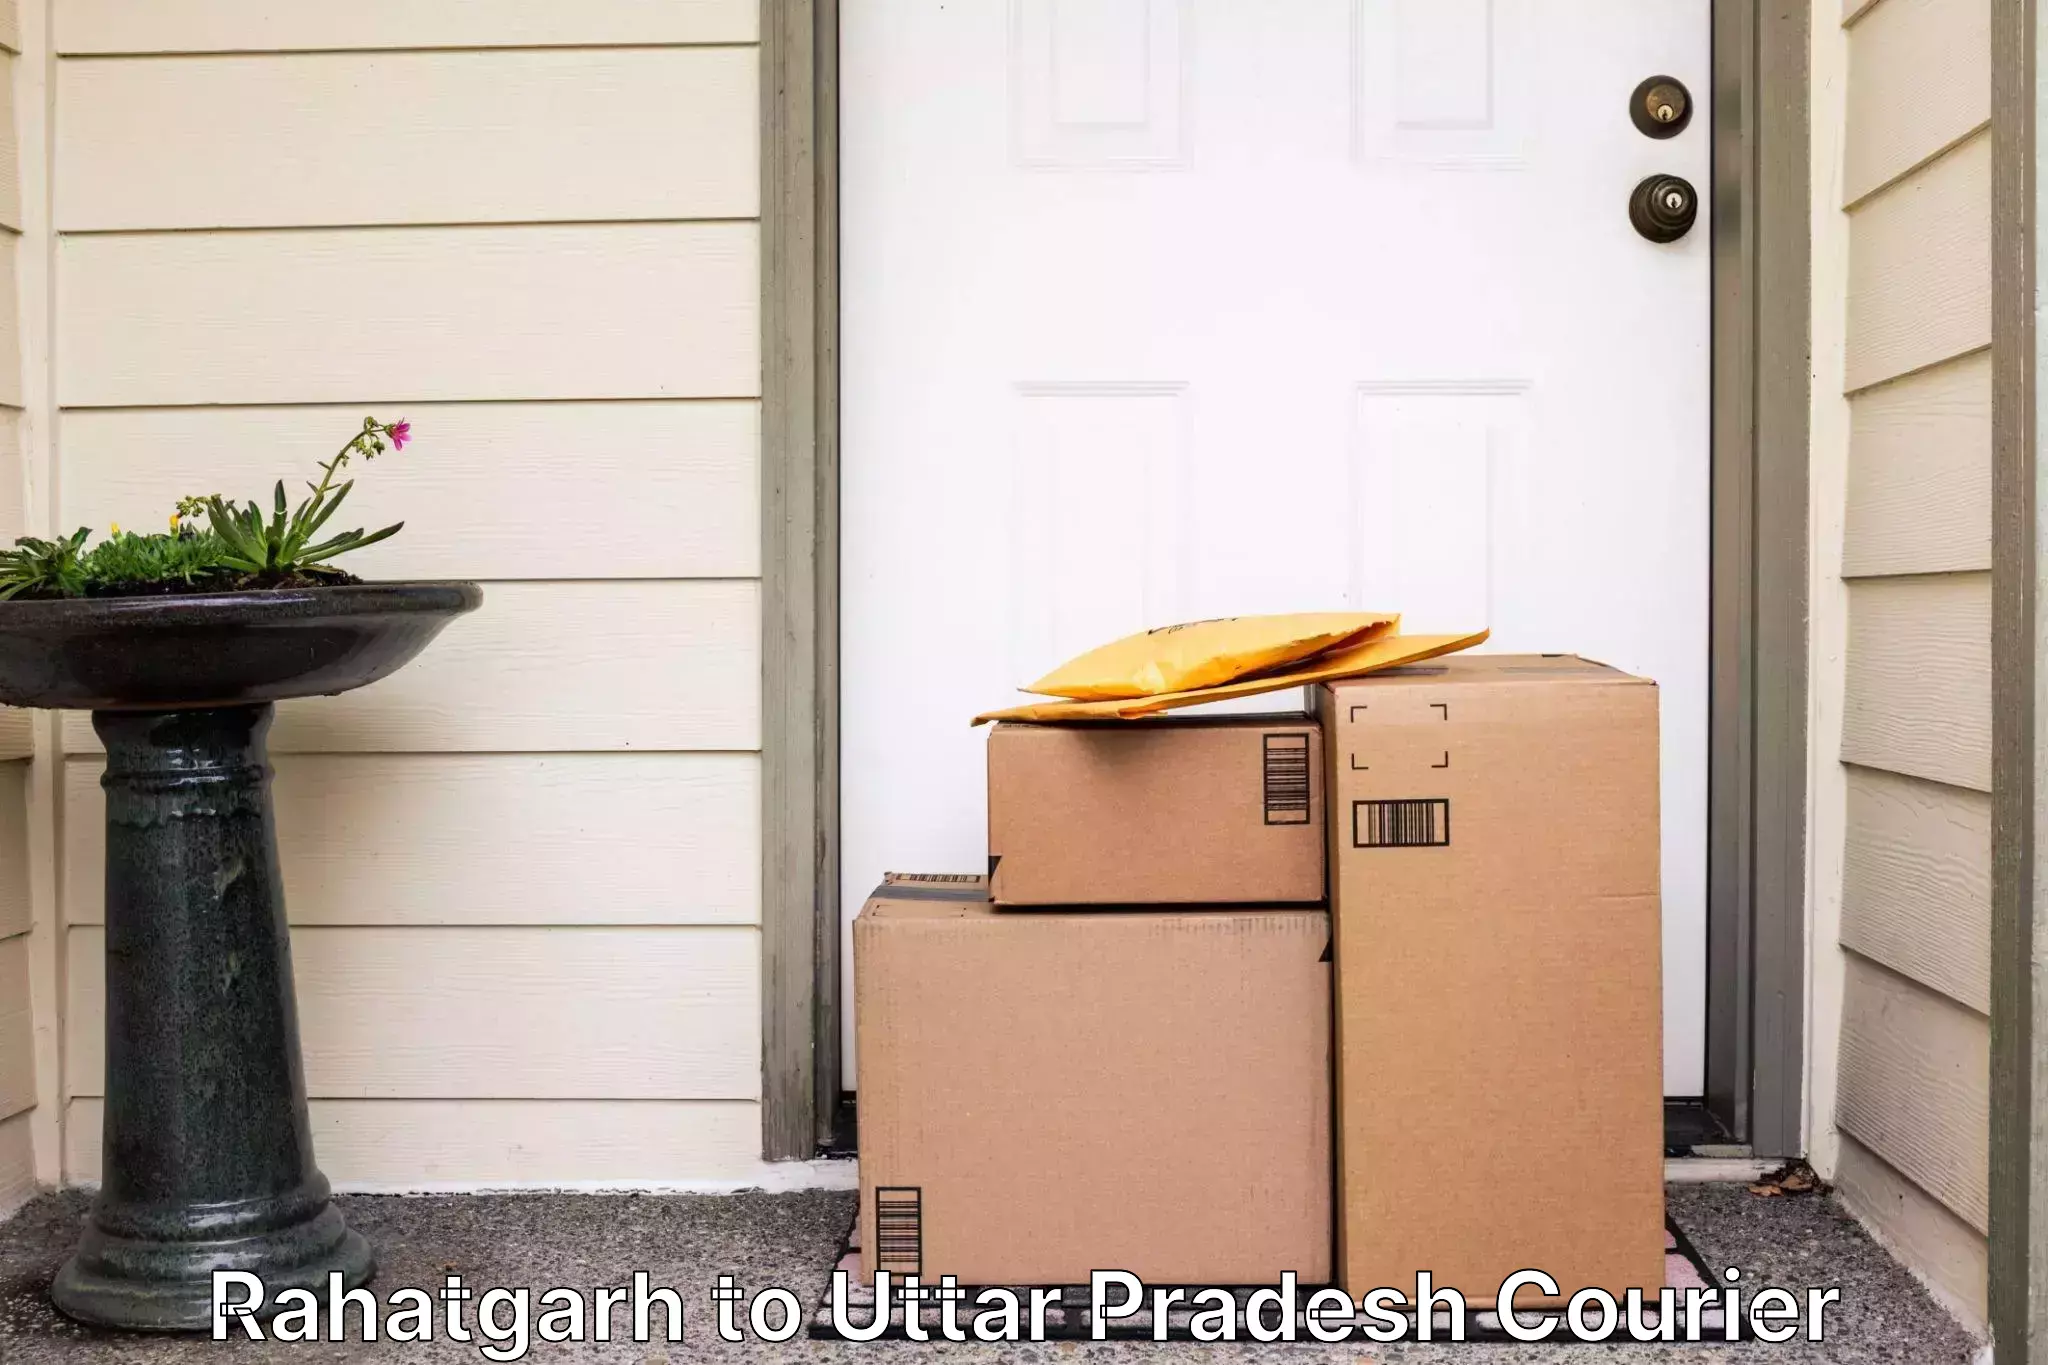 Flexible delivery schedules Rahatgarh to Uttar Pradesh